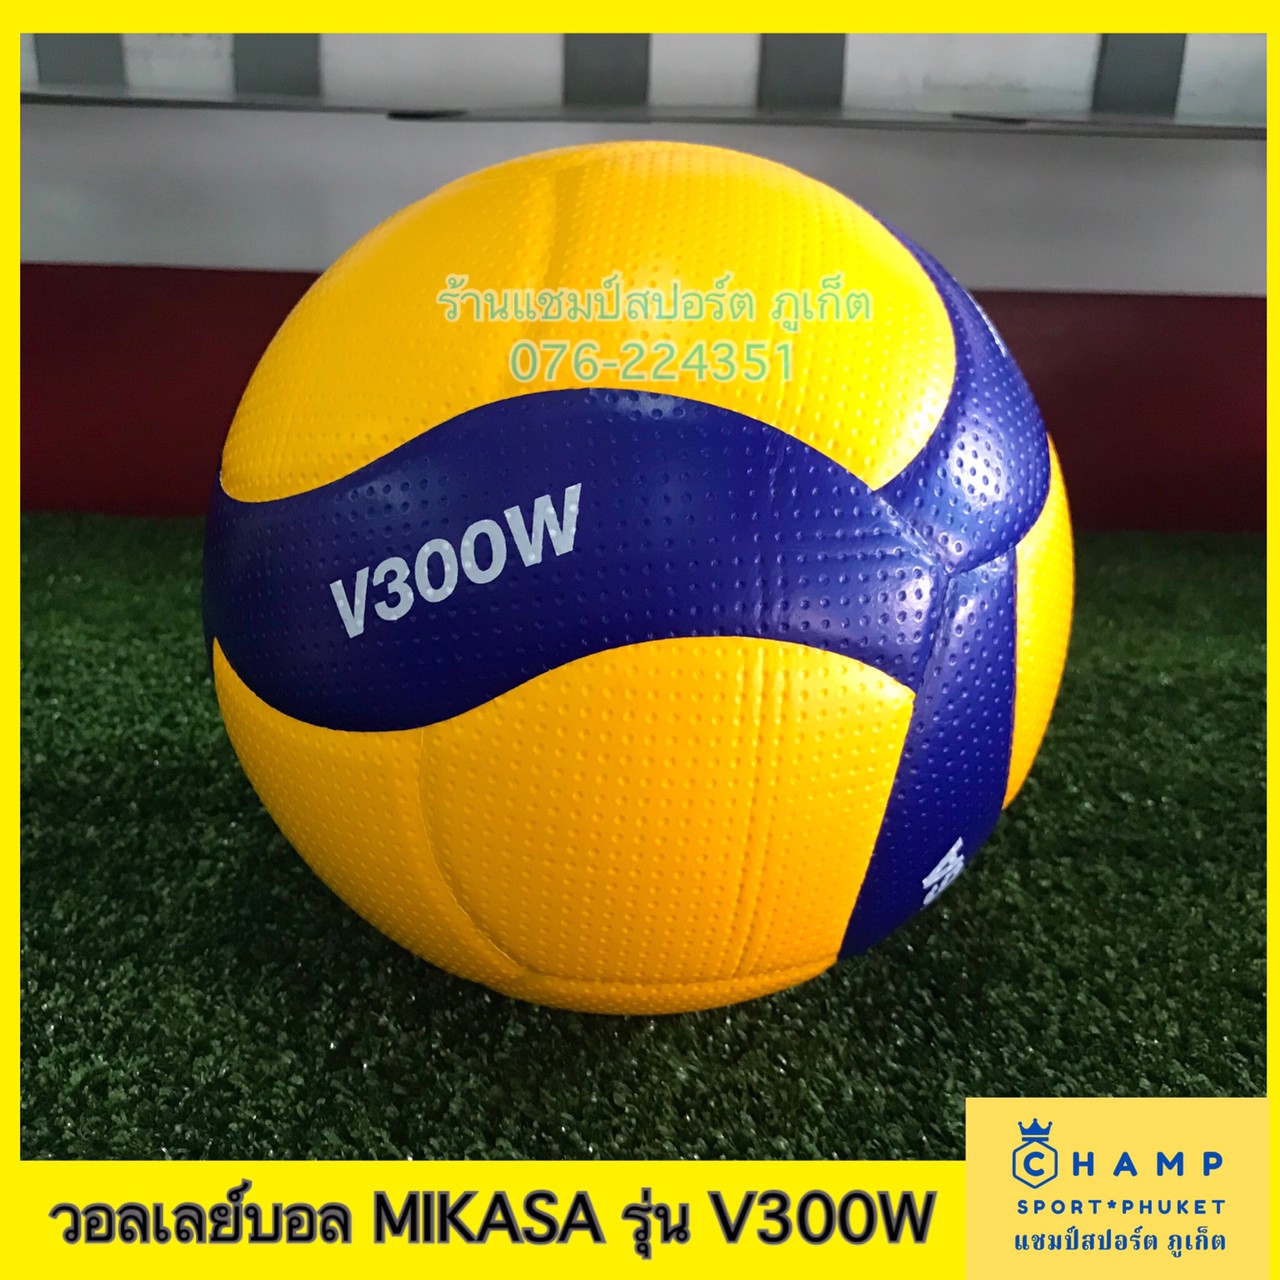 MIKASA วอลเลย์บอล ลูกวอลเลย์บอล V300W ลิขสิทธ์แท้!! MIKASA Volleyball